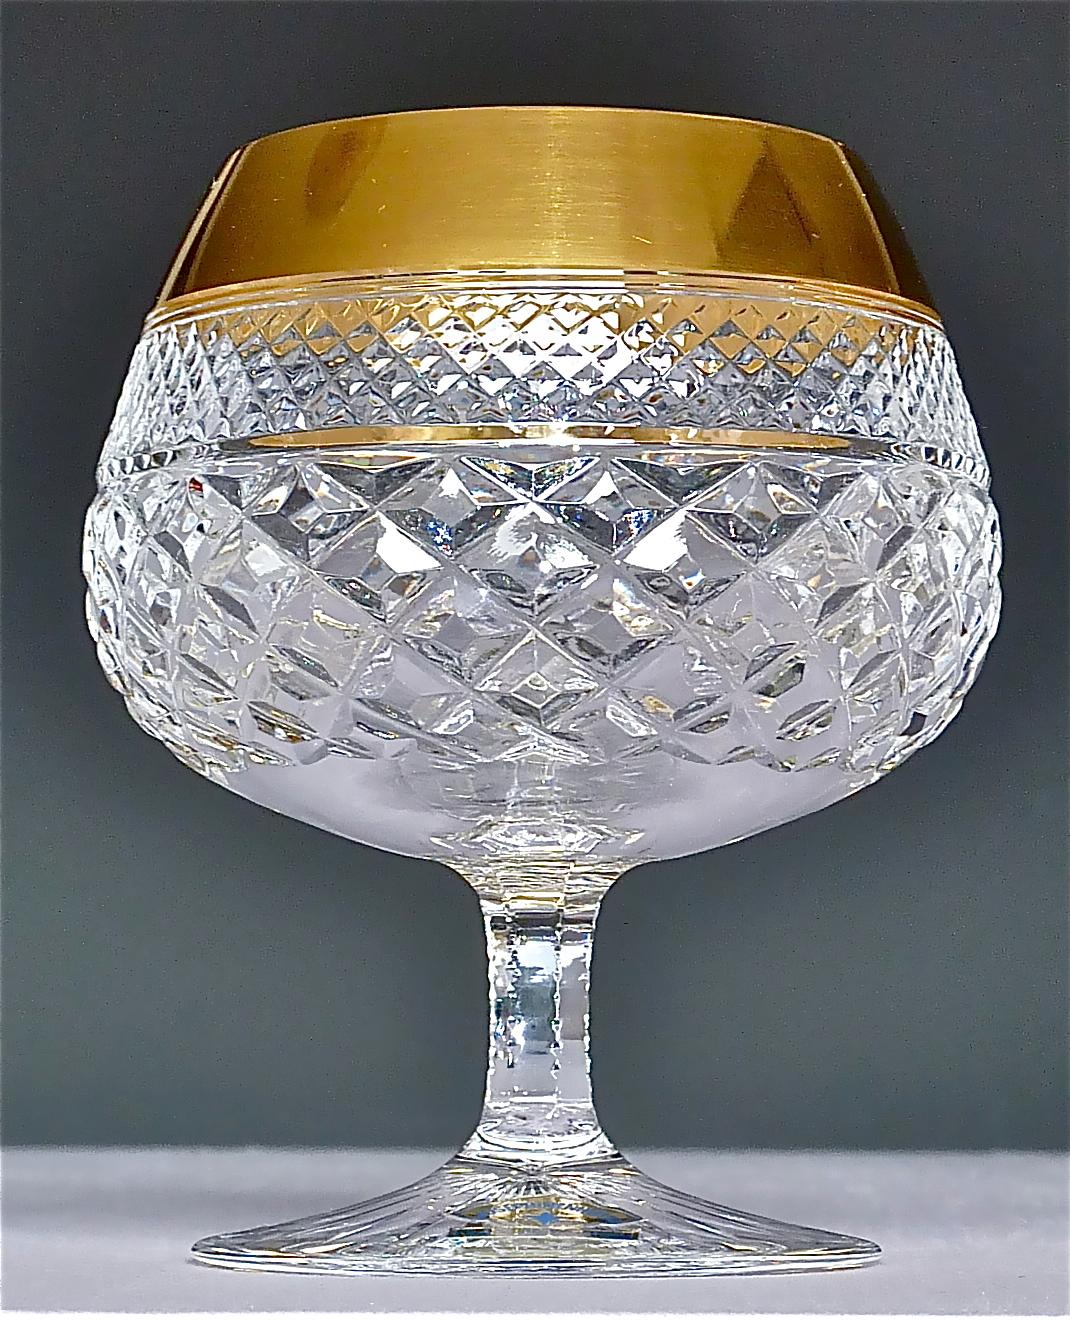 Wunderschönes, handgefertigtes, facettiertes Kristallglas des 20. Jahrhunderts mit 24-karätigem Goldrand, hergestellt von der Josephinenhütte Moser um 1960-1970 und ganz im Stil der exklusiven französischen Firma Baccarat oder Saint Louis Distel.